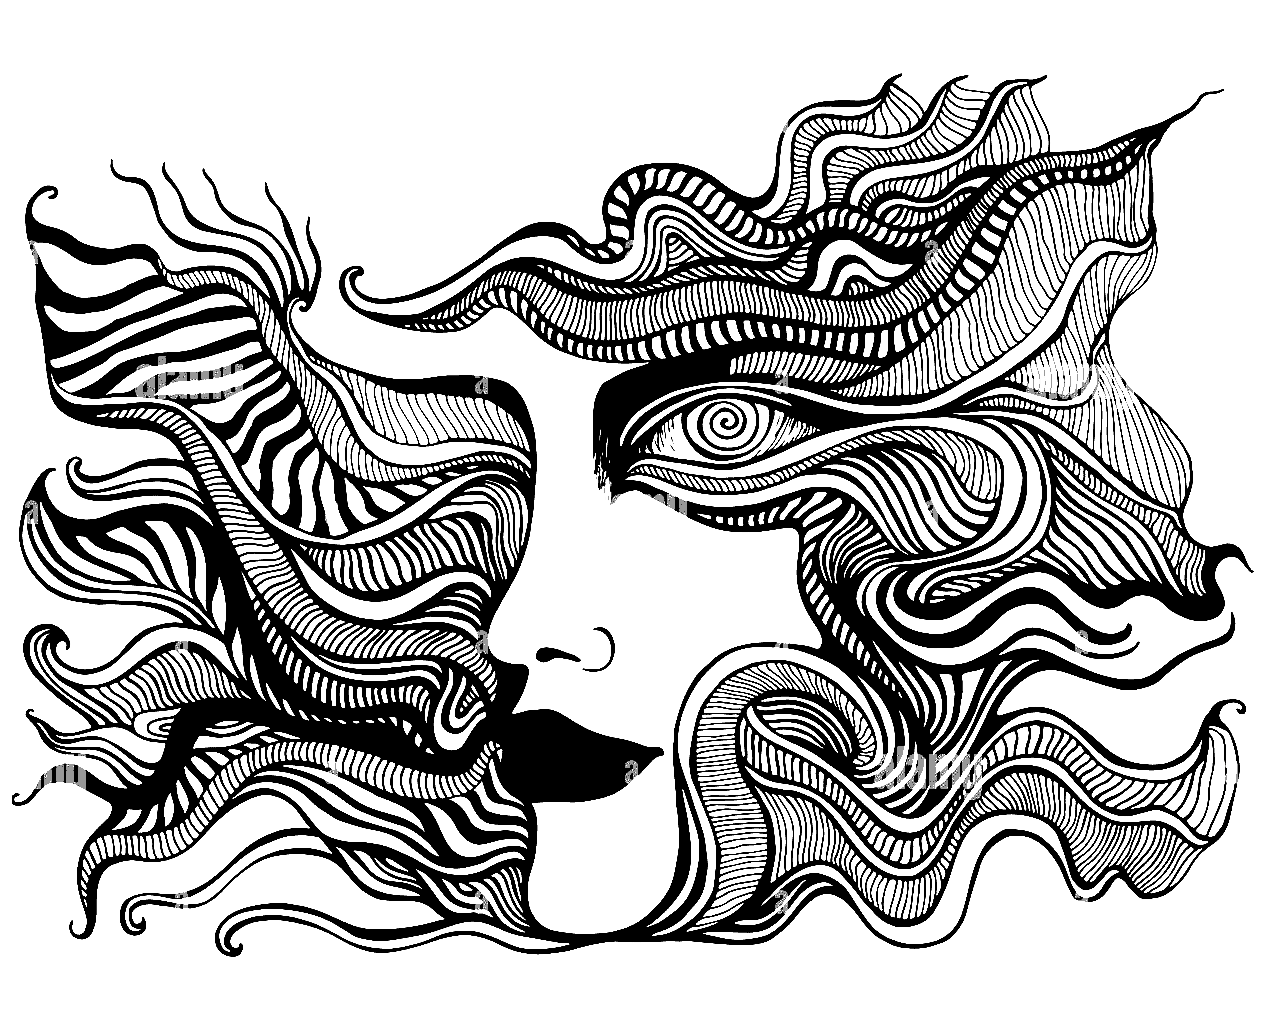 Coloriage Visage Psychédélique avec Yeux en Spirale